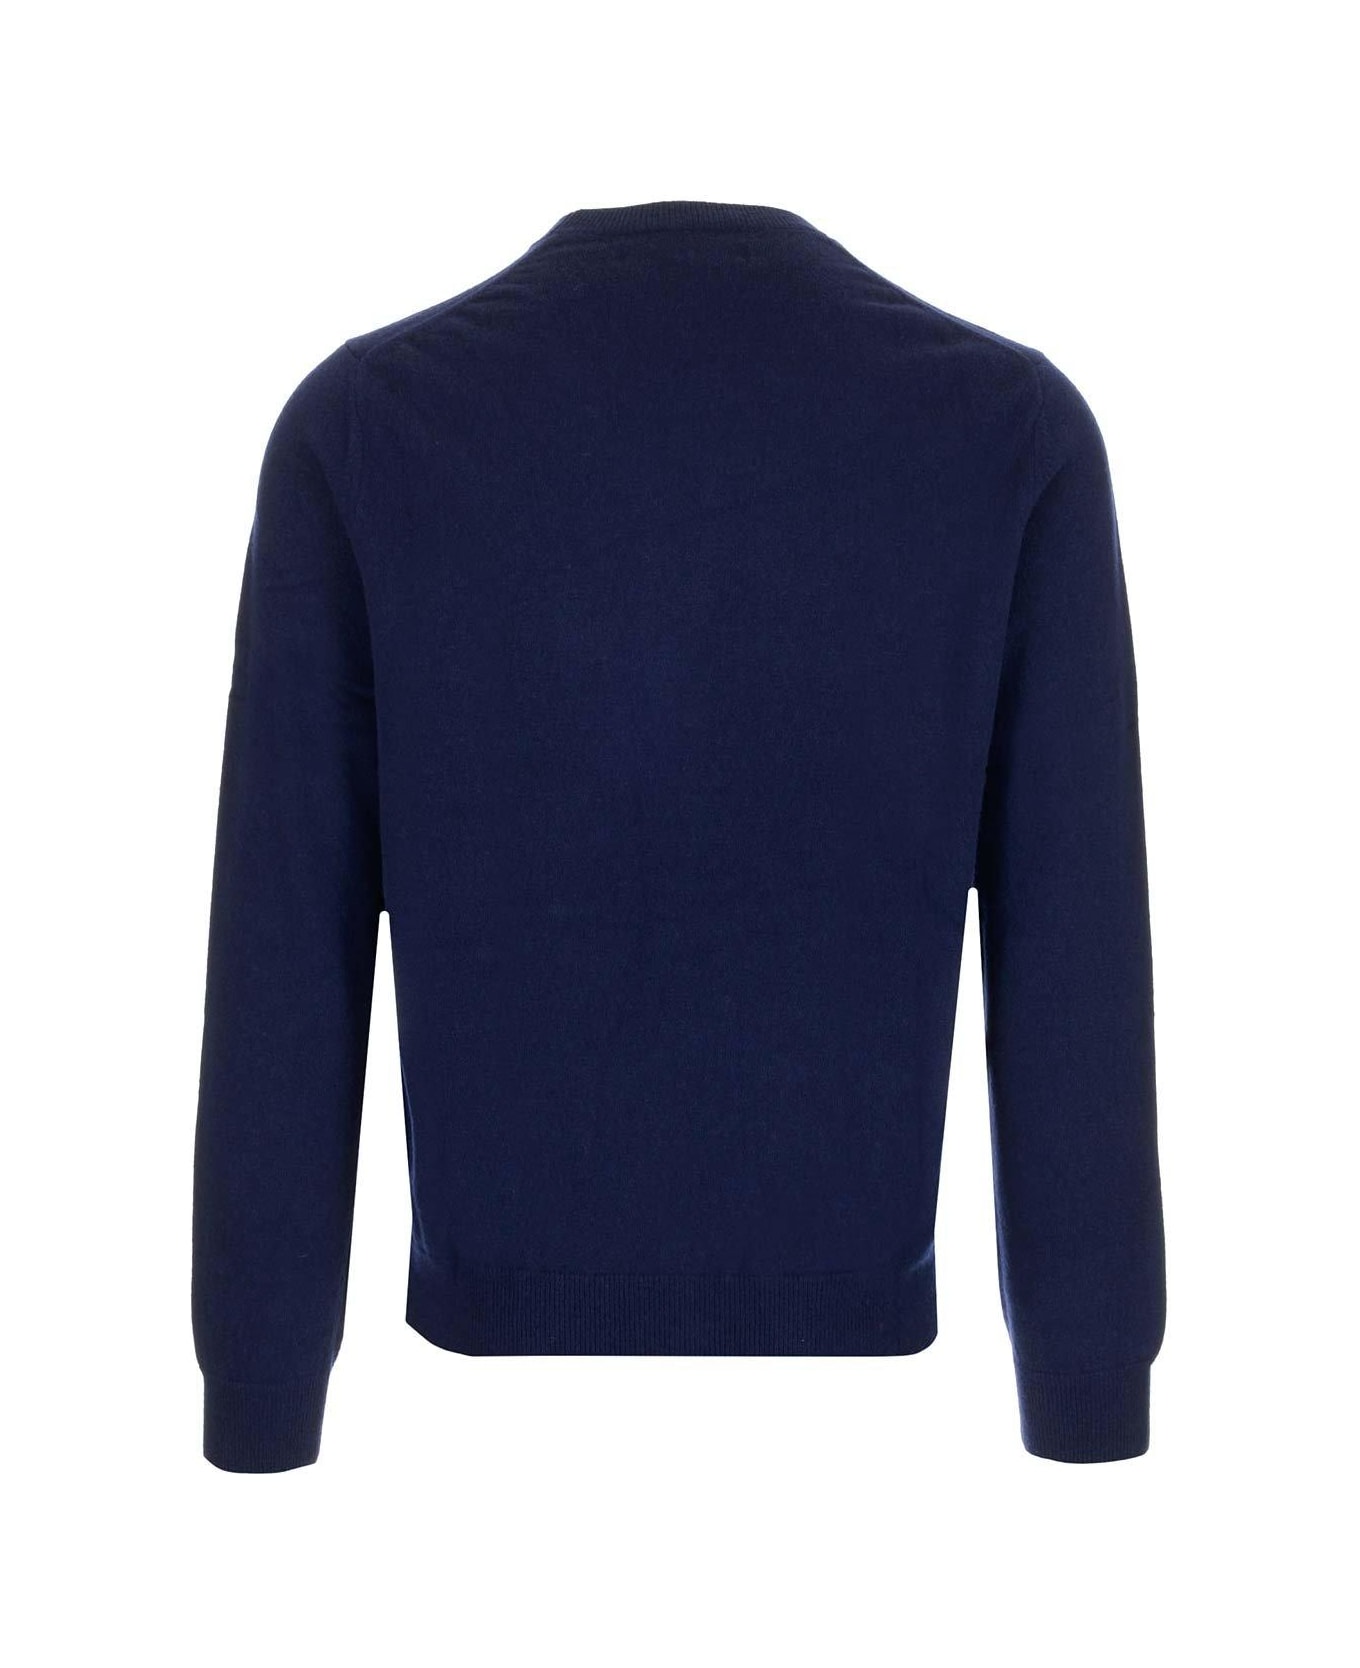 Comme des Garçons Shirt Crewneck Knitted Jumper - Blu navy